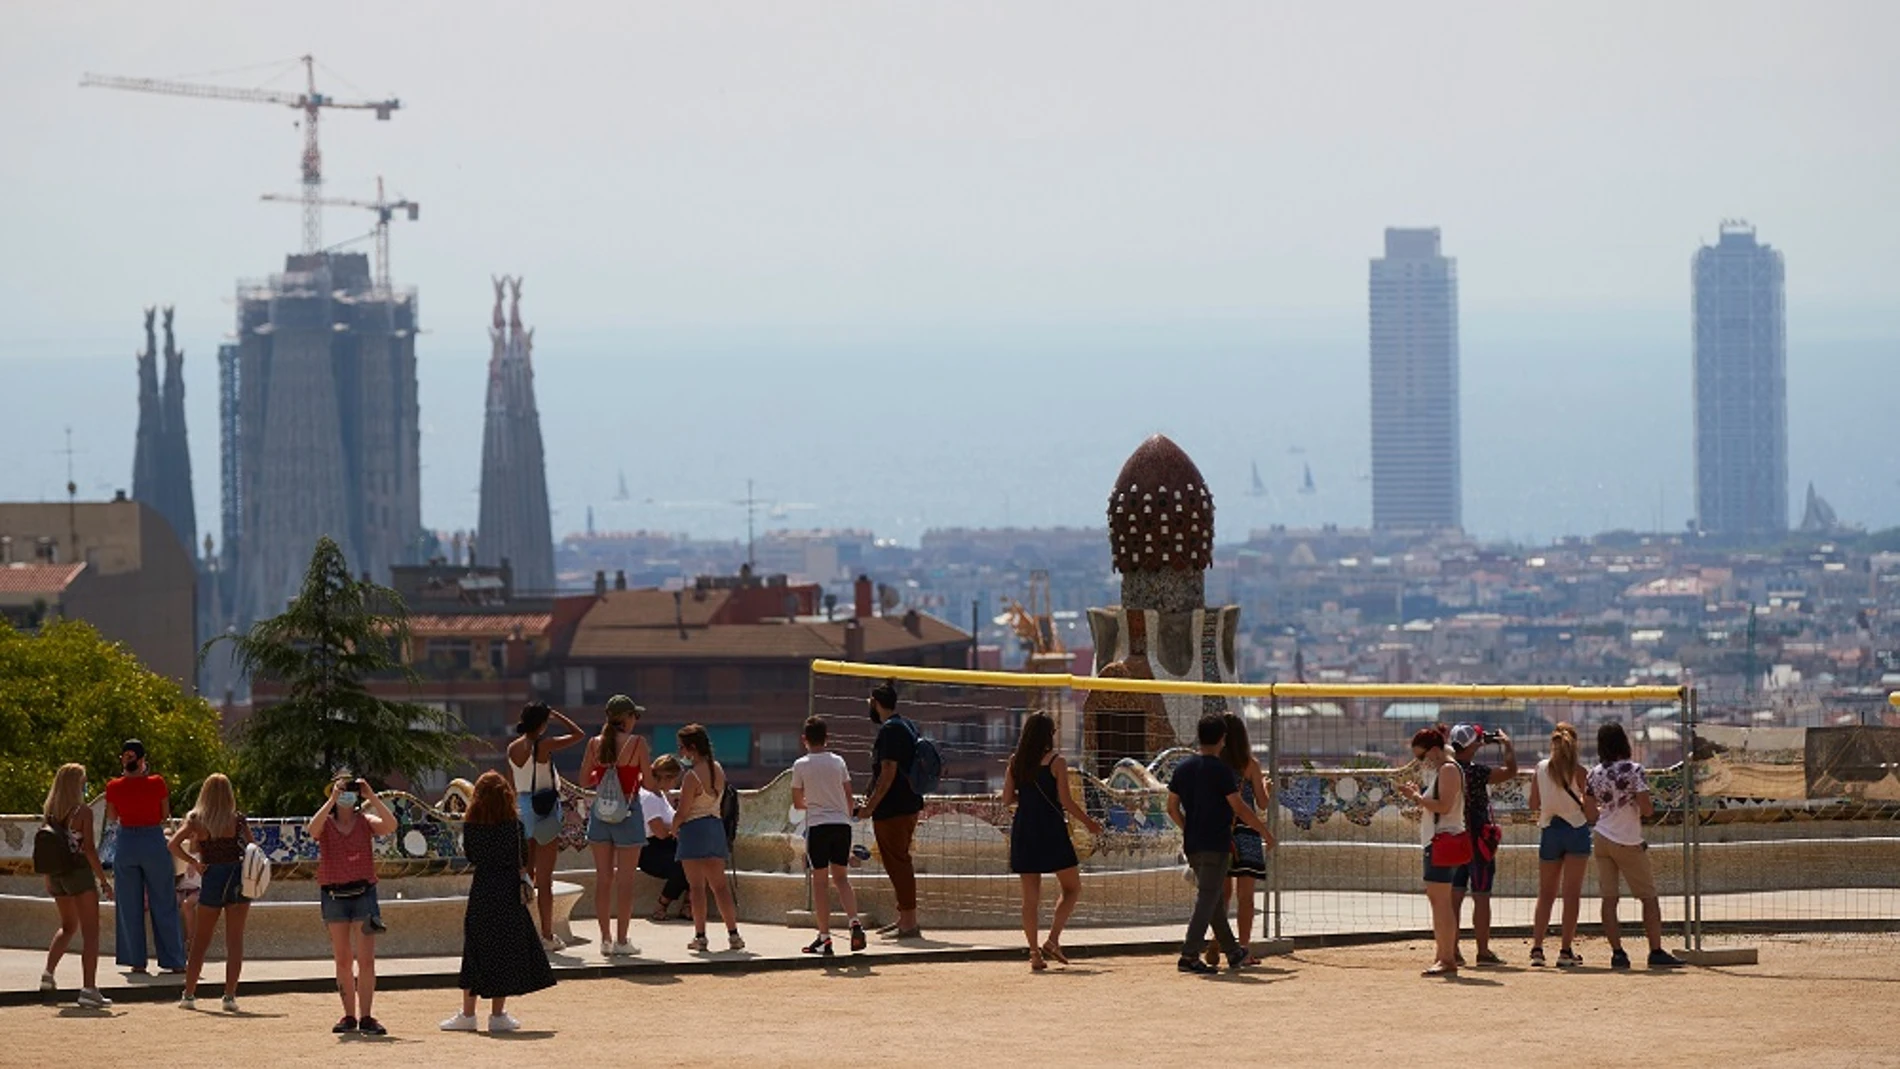 Varios visitantes en el parque Güell de Barcelona